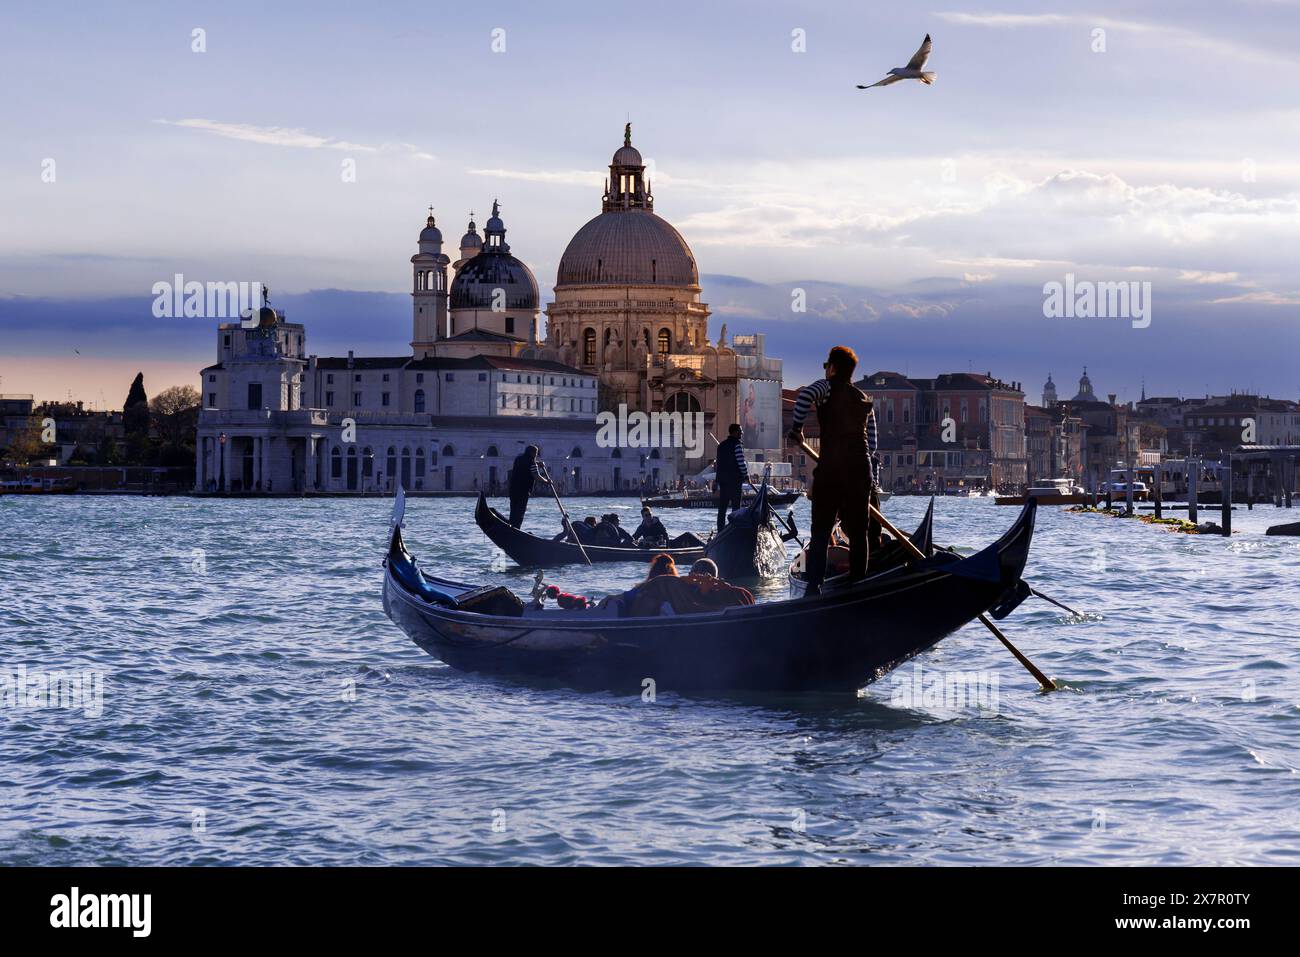 Venise, Province de Venise, région de Vénétie, Italie. Gondoles. Église de San Marco en arrière-plan. Venise est classée au patrimoine mondial de l'UNESCO. Banque D'Images